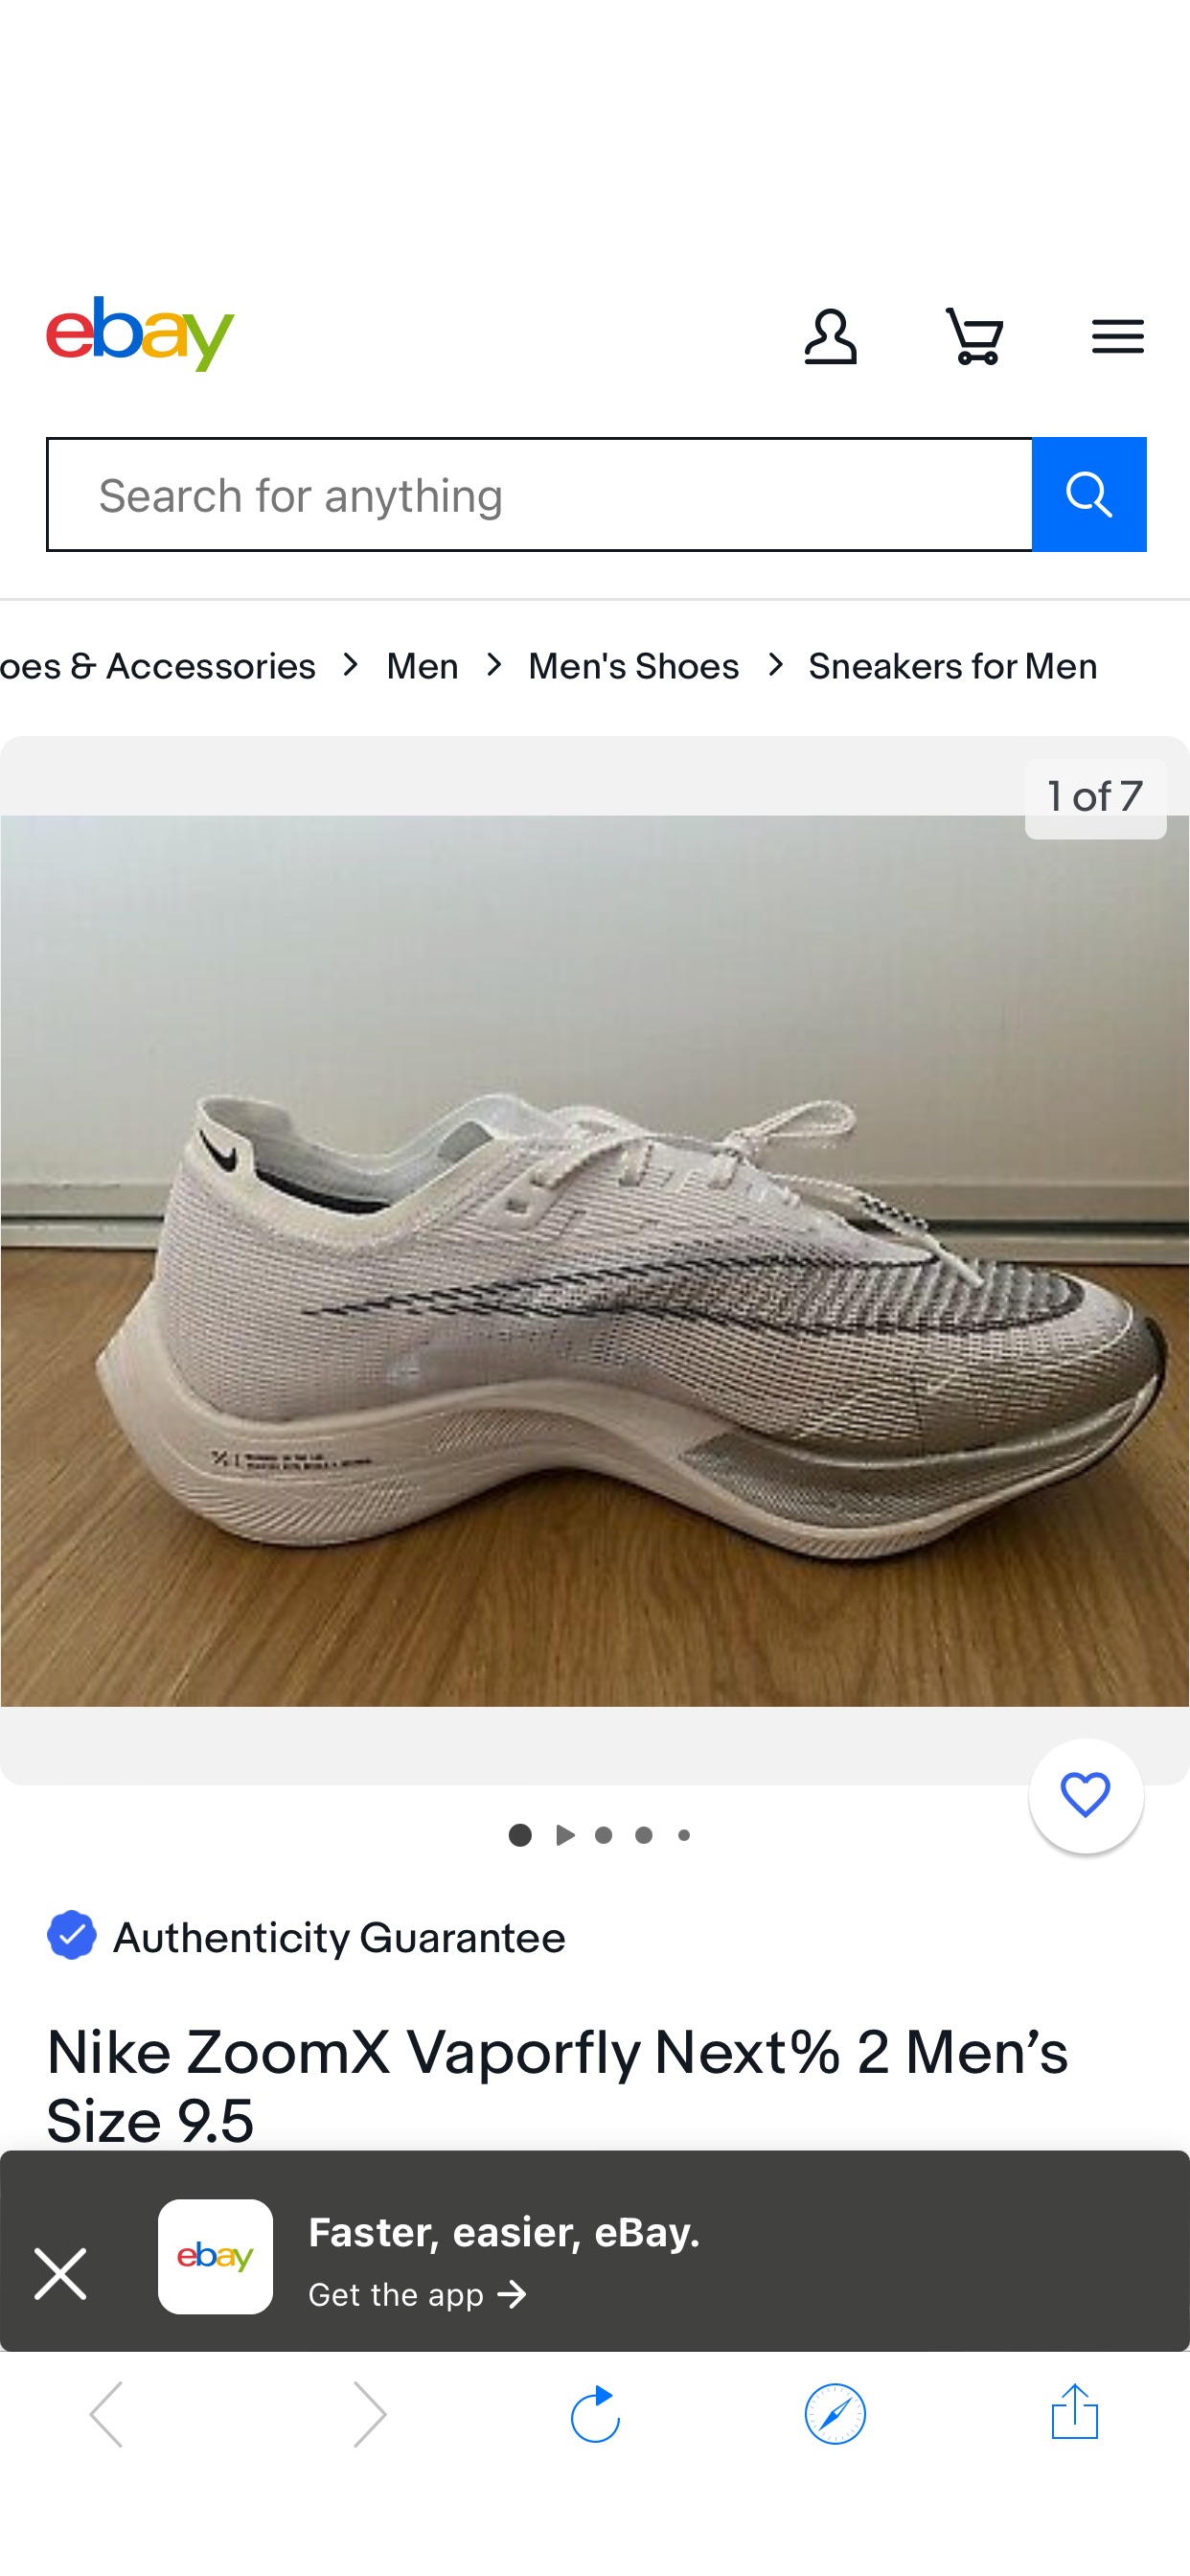 Nike ZoomX Vaporfly Next% 2 Men’s Size 9.5 | eBay耐克最强专业跑鞋